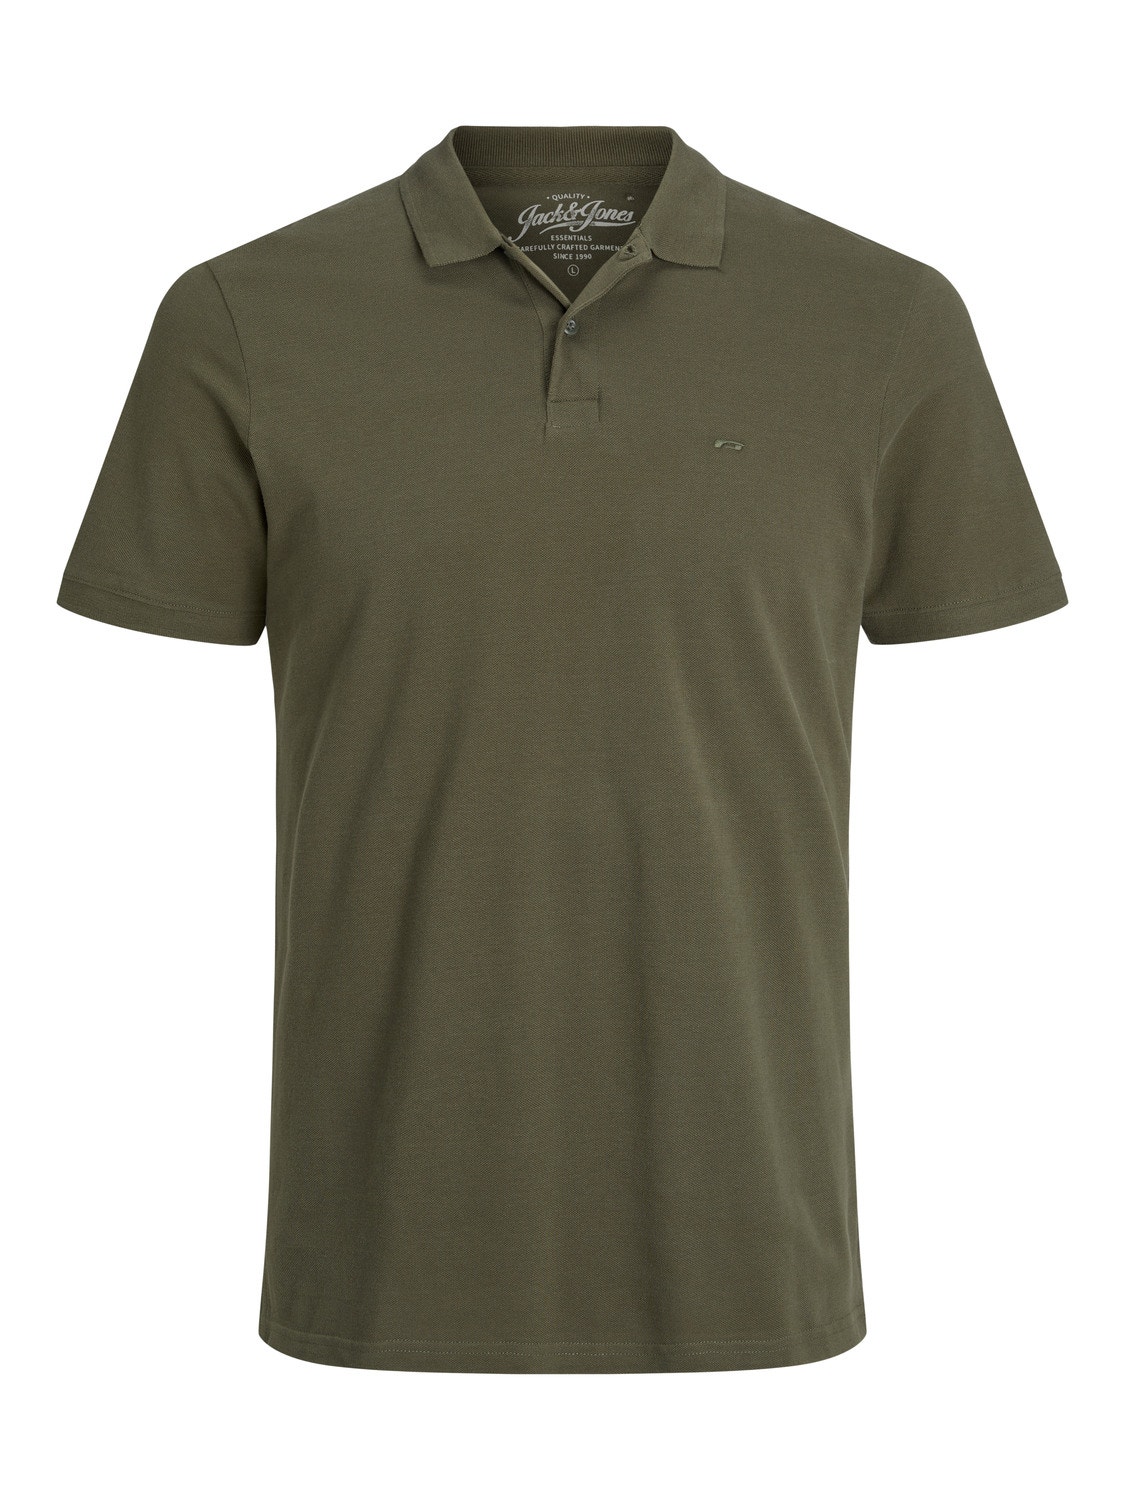 Jack & Jones Yksivärinen Polo T-shirt -Olive Night - 12136516